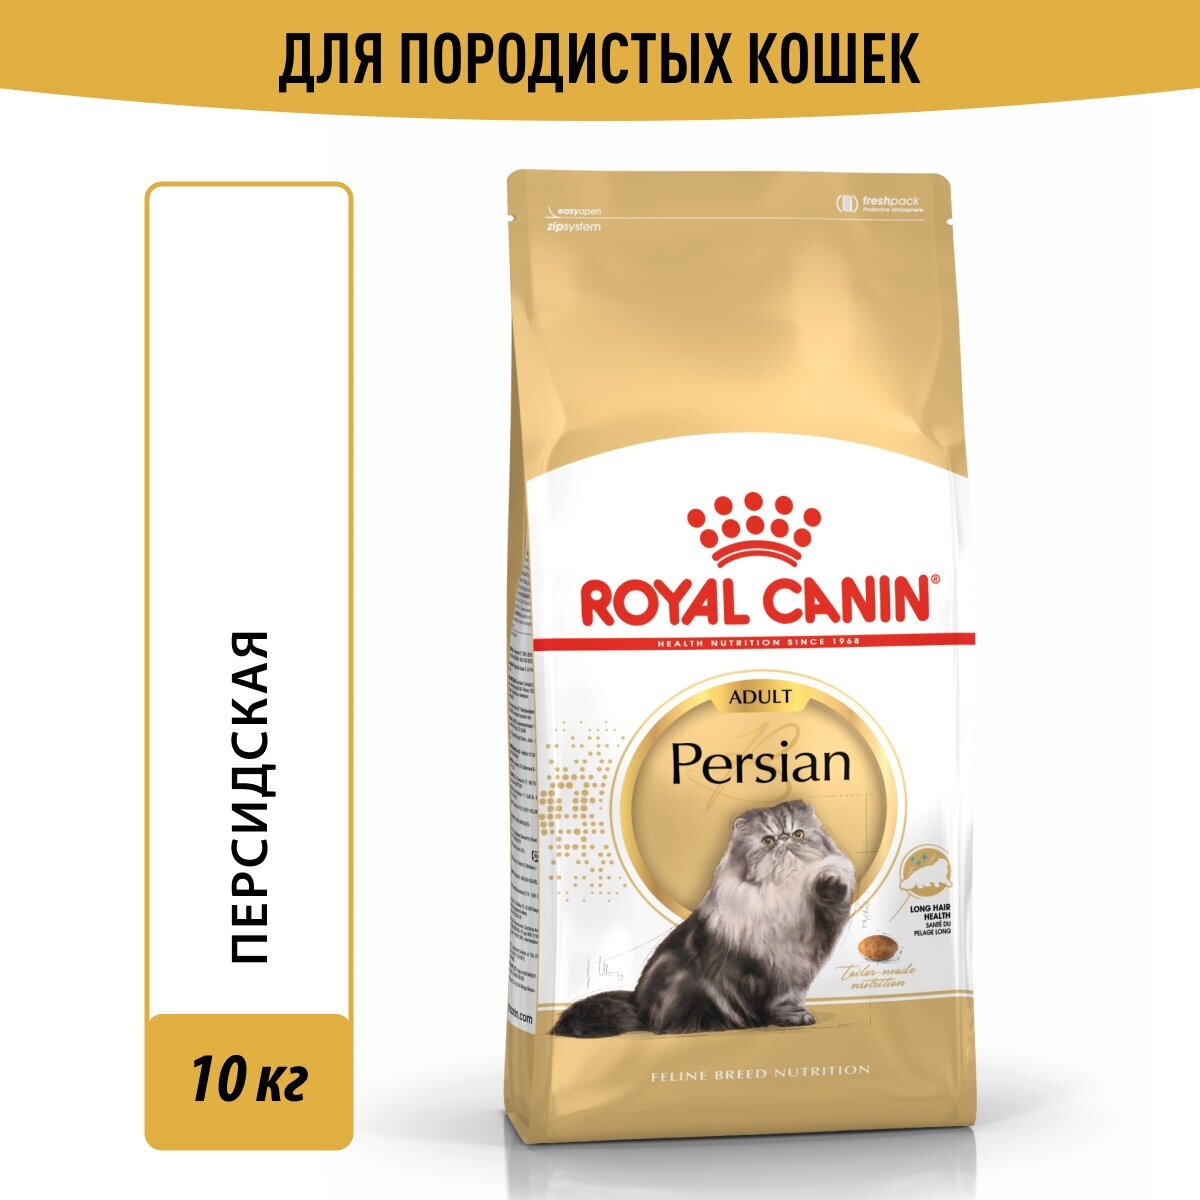 ROYAL CANIN PERSIAN ADULT для взрослых персидских кошек (10 кг)